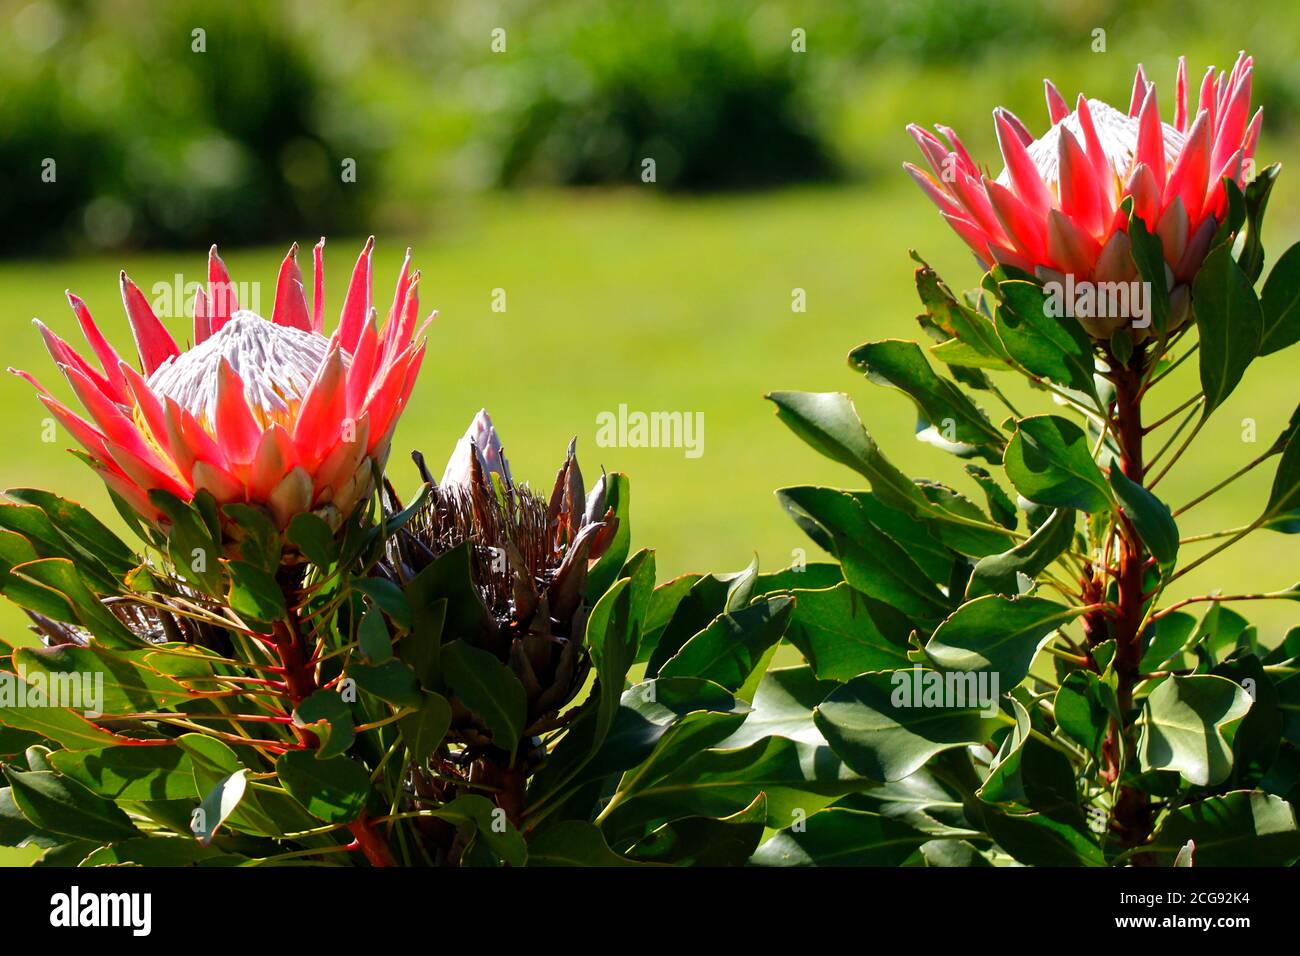 Un roi protea fleurs photographiées dans le jardin botanique national de Kirstenbosch au Cap. Banque D'Images